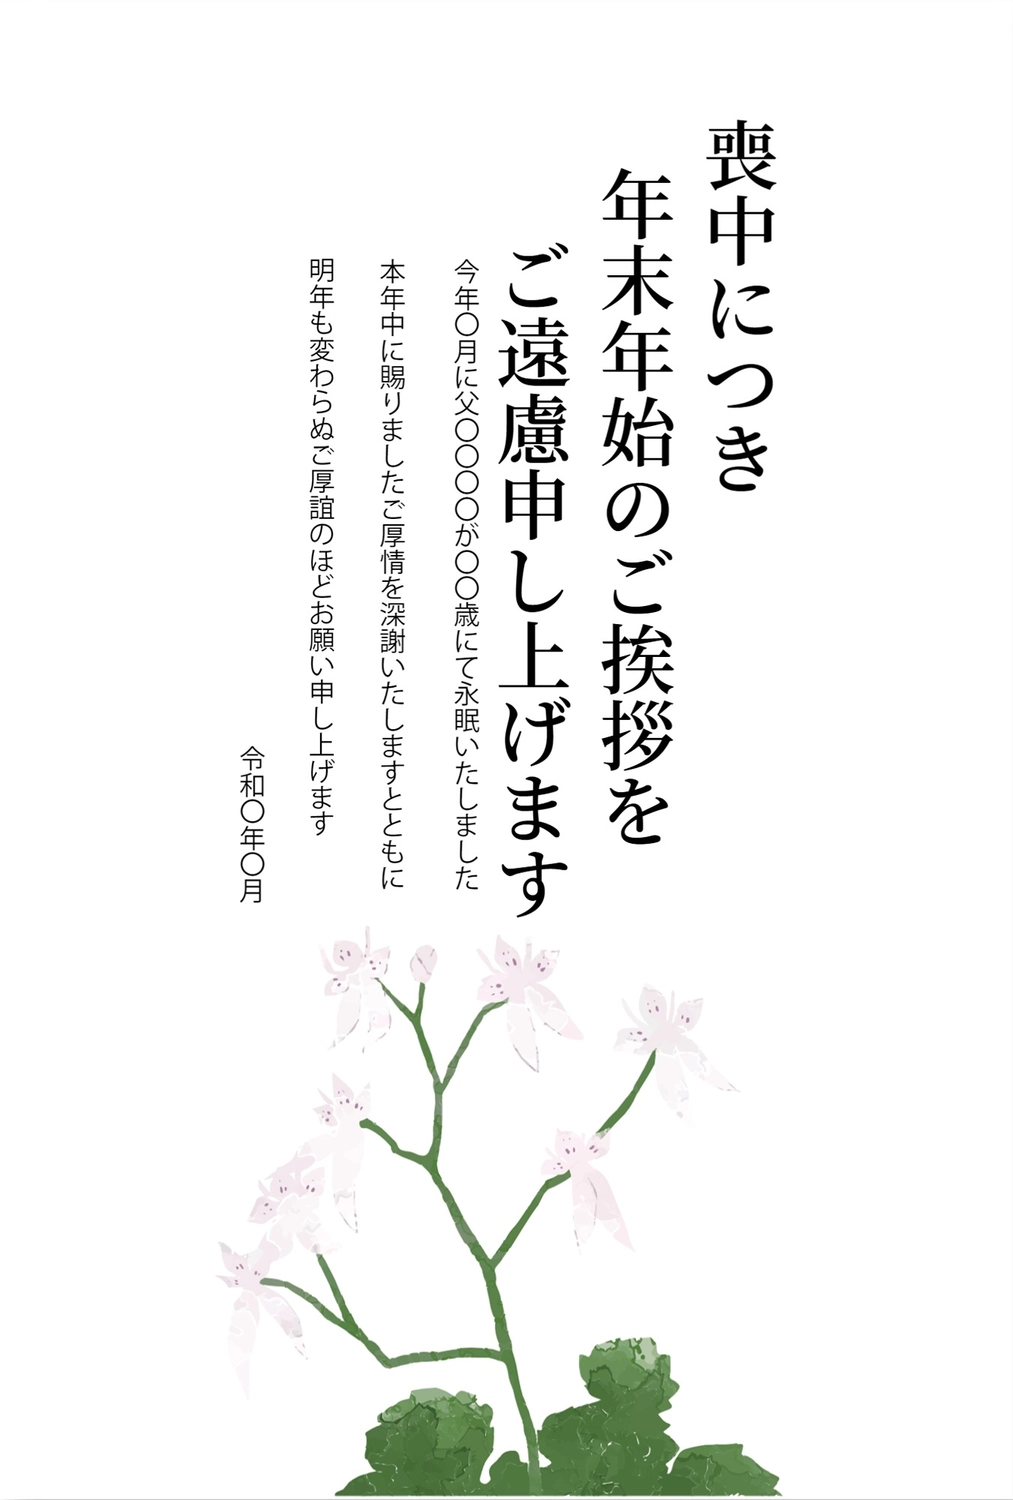 手描き花の喪中はがき, White flower, death, condolence, Mourning Postcard template